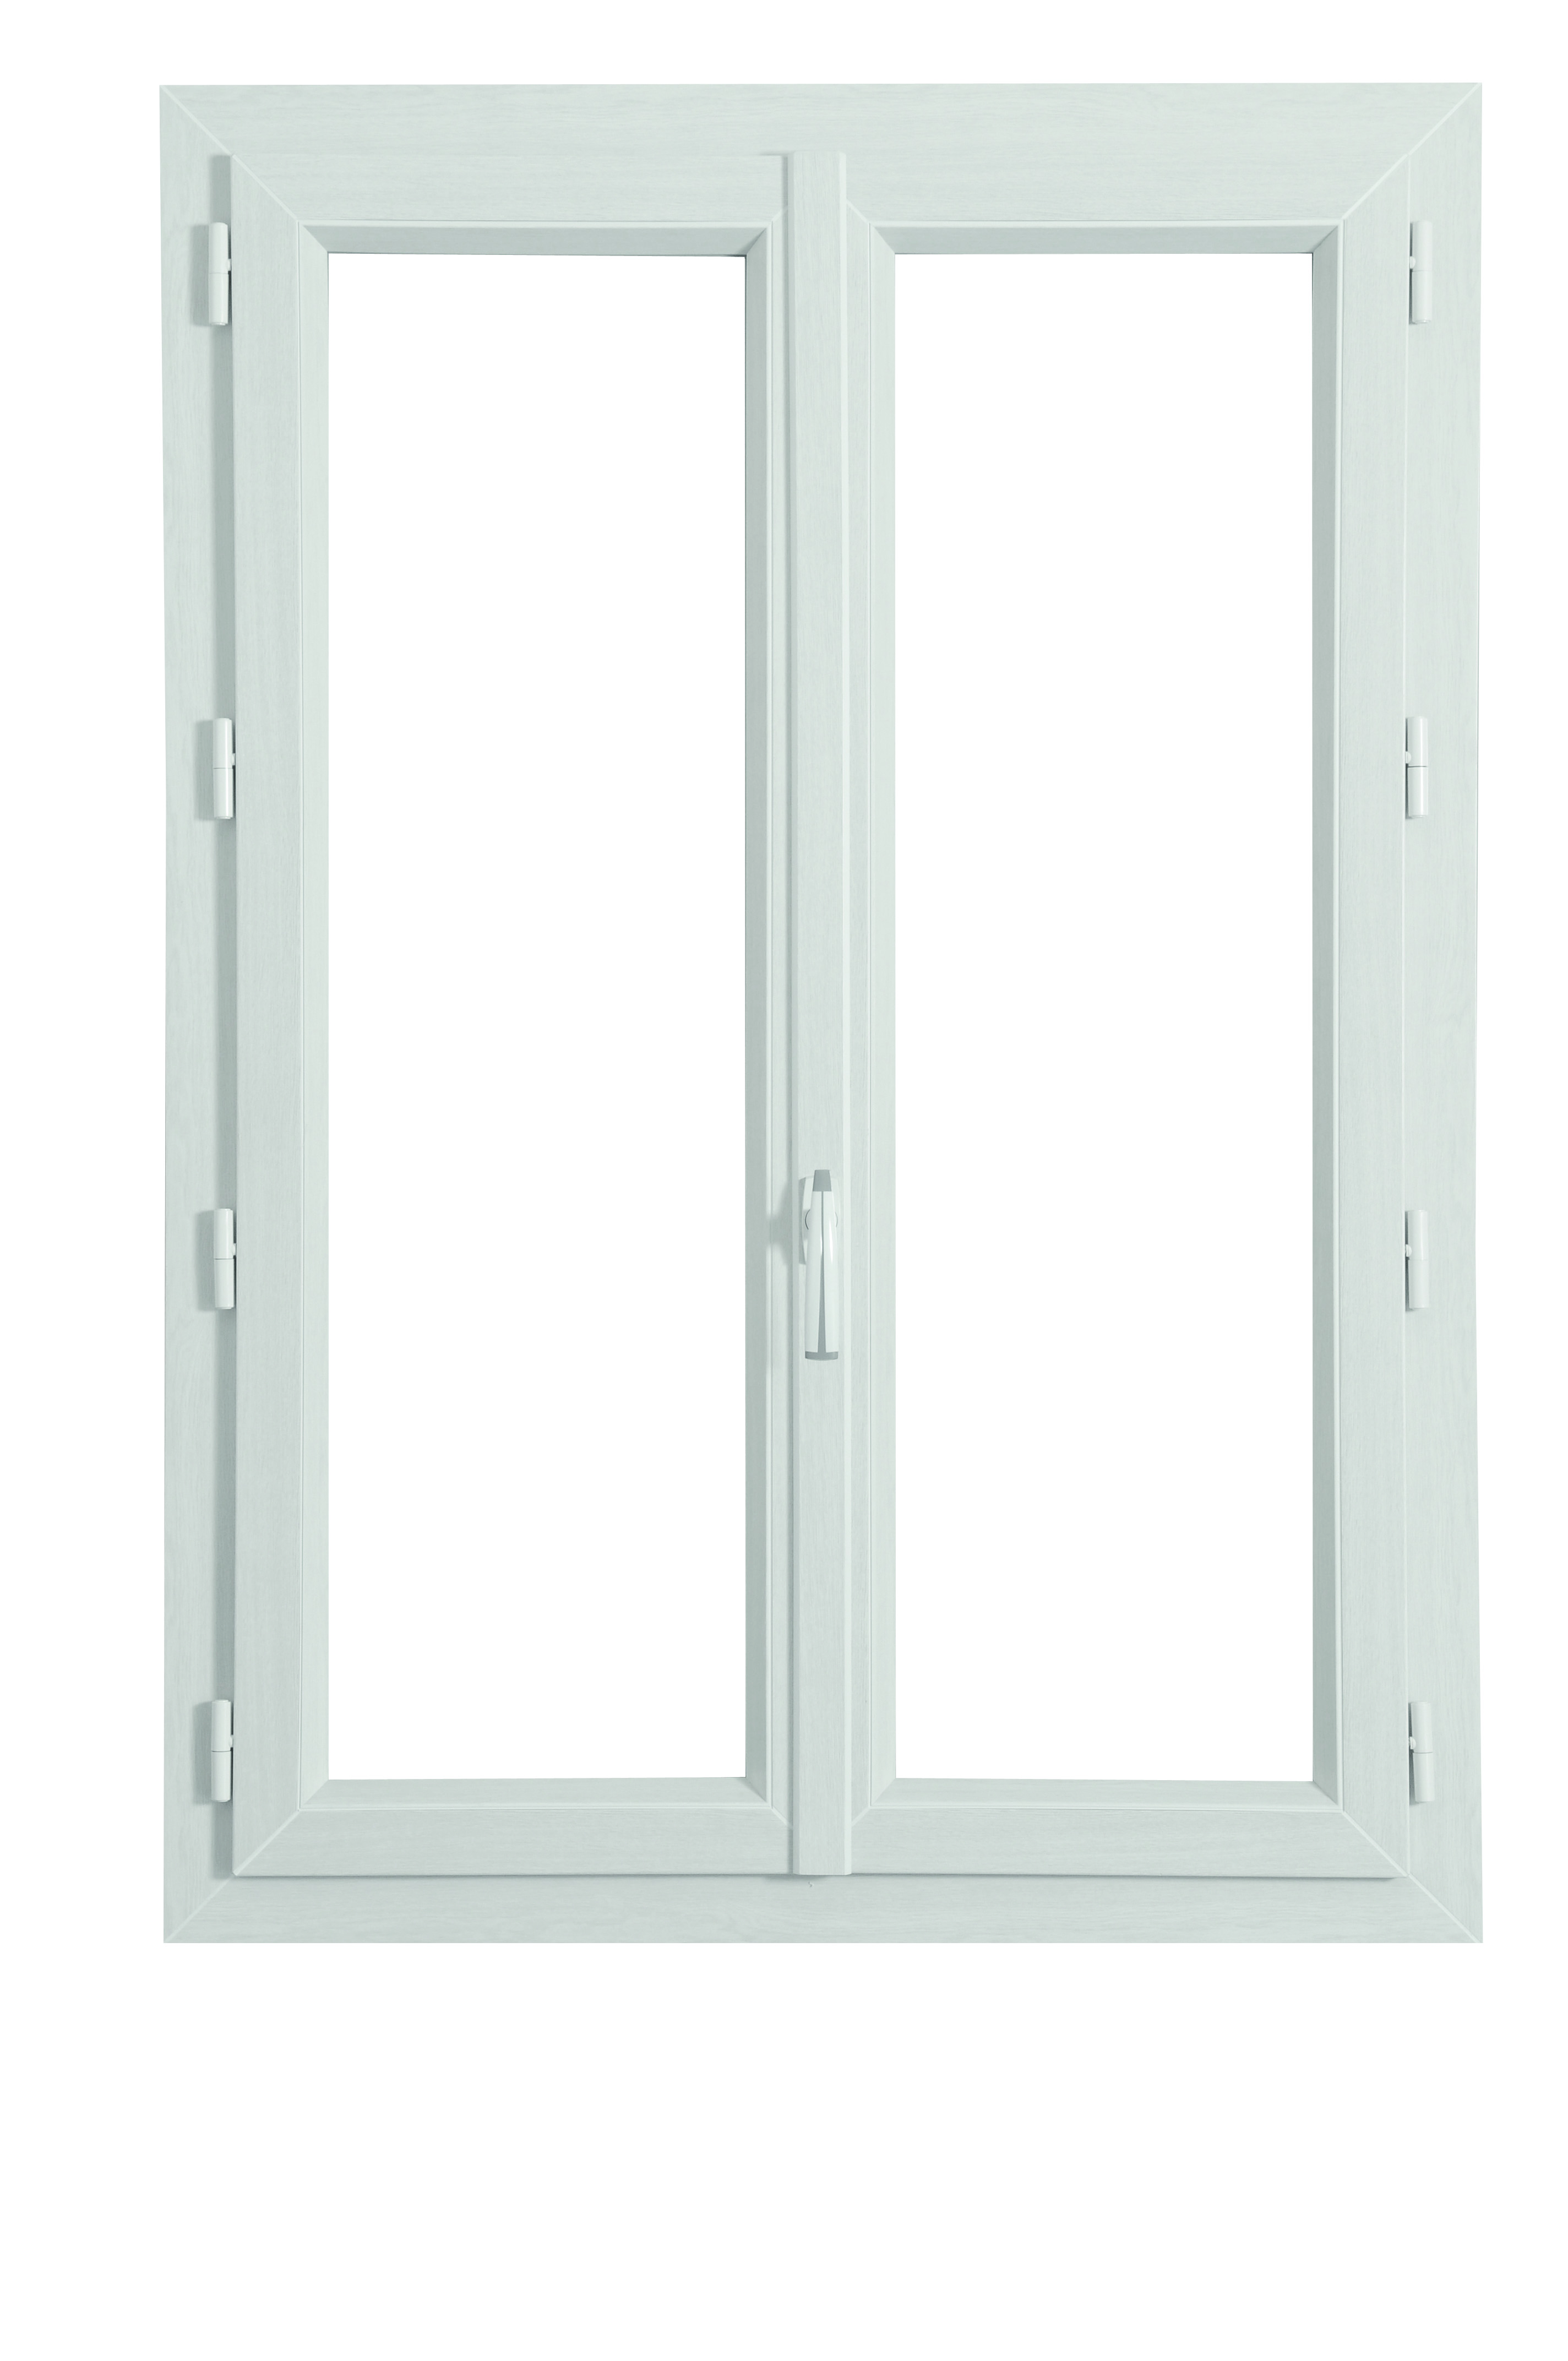 Faites la différence avec une fenêtre en PVC de Grosfillex : un extérieur d'une pureté blanche et des décors bois raffinés à l'intérieur. Exclusivement chez nos concessionnaires Grosfillex.